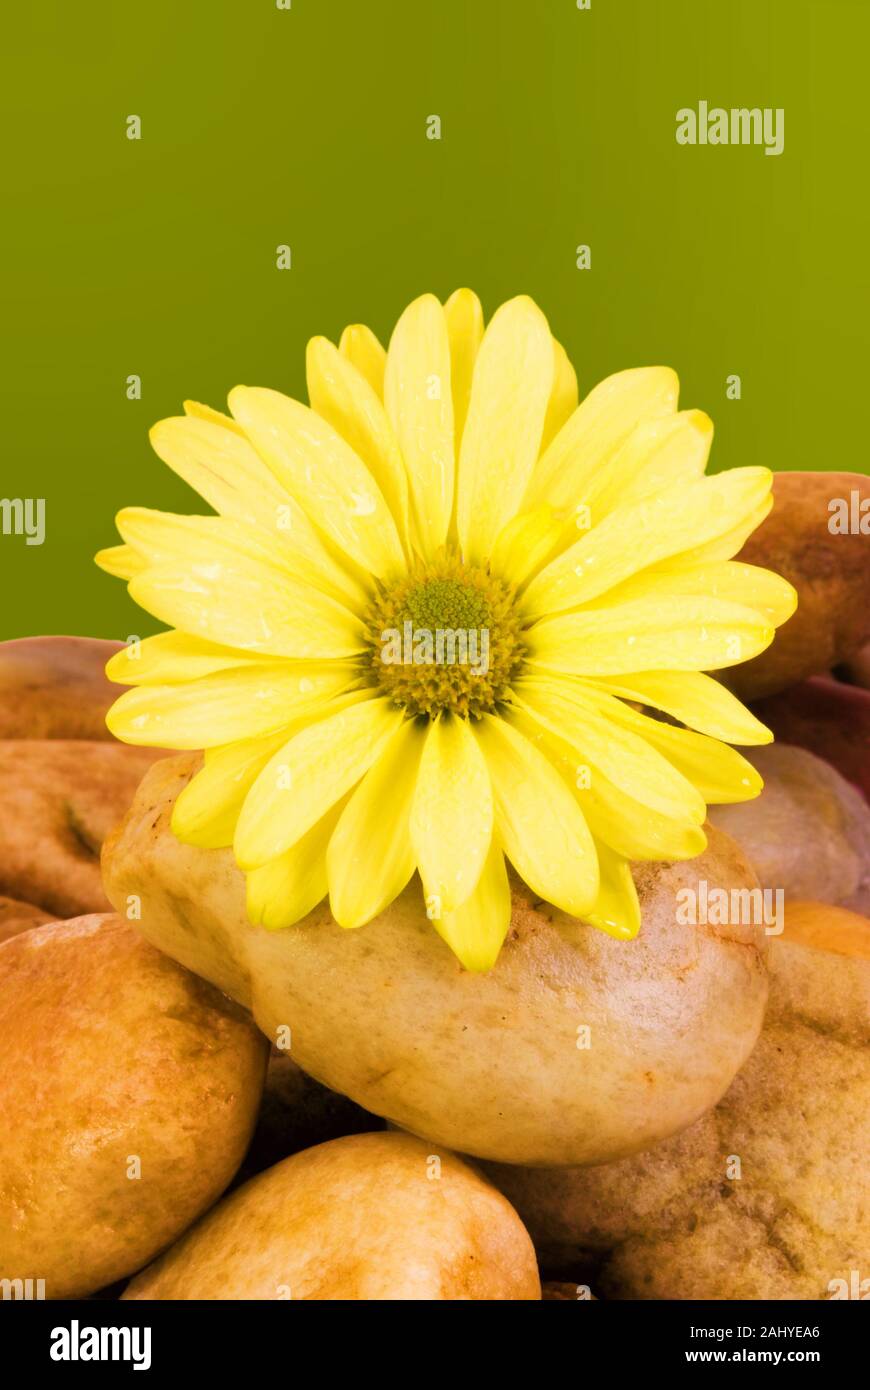 Ein frisches Nass gelbe Daisy auf einem Bett aus Stein mit Wassertropfen und nasse Steine. Ein daisy flower symbolisiert Unschuld und Reinheit und wahre Liebe. Stockfoto